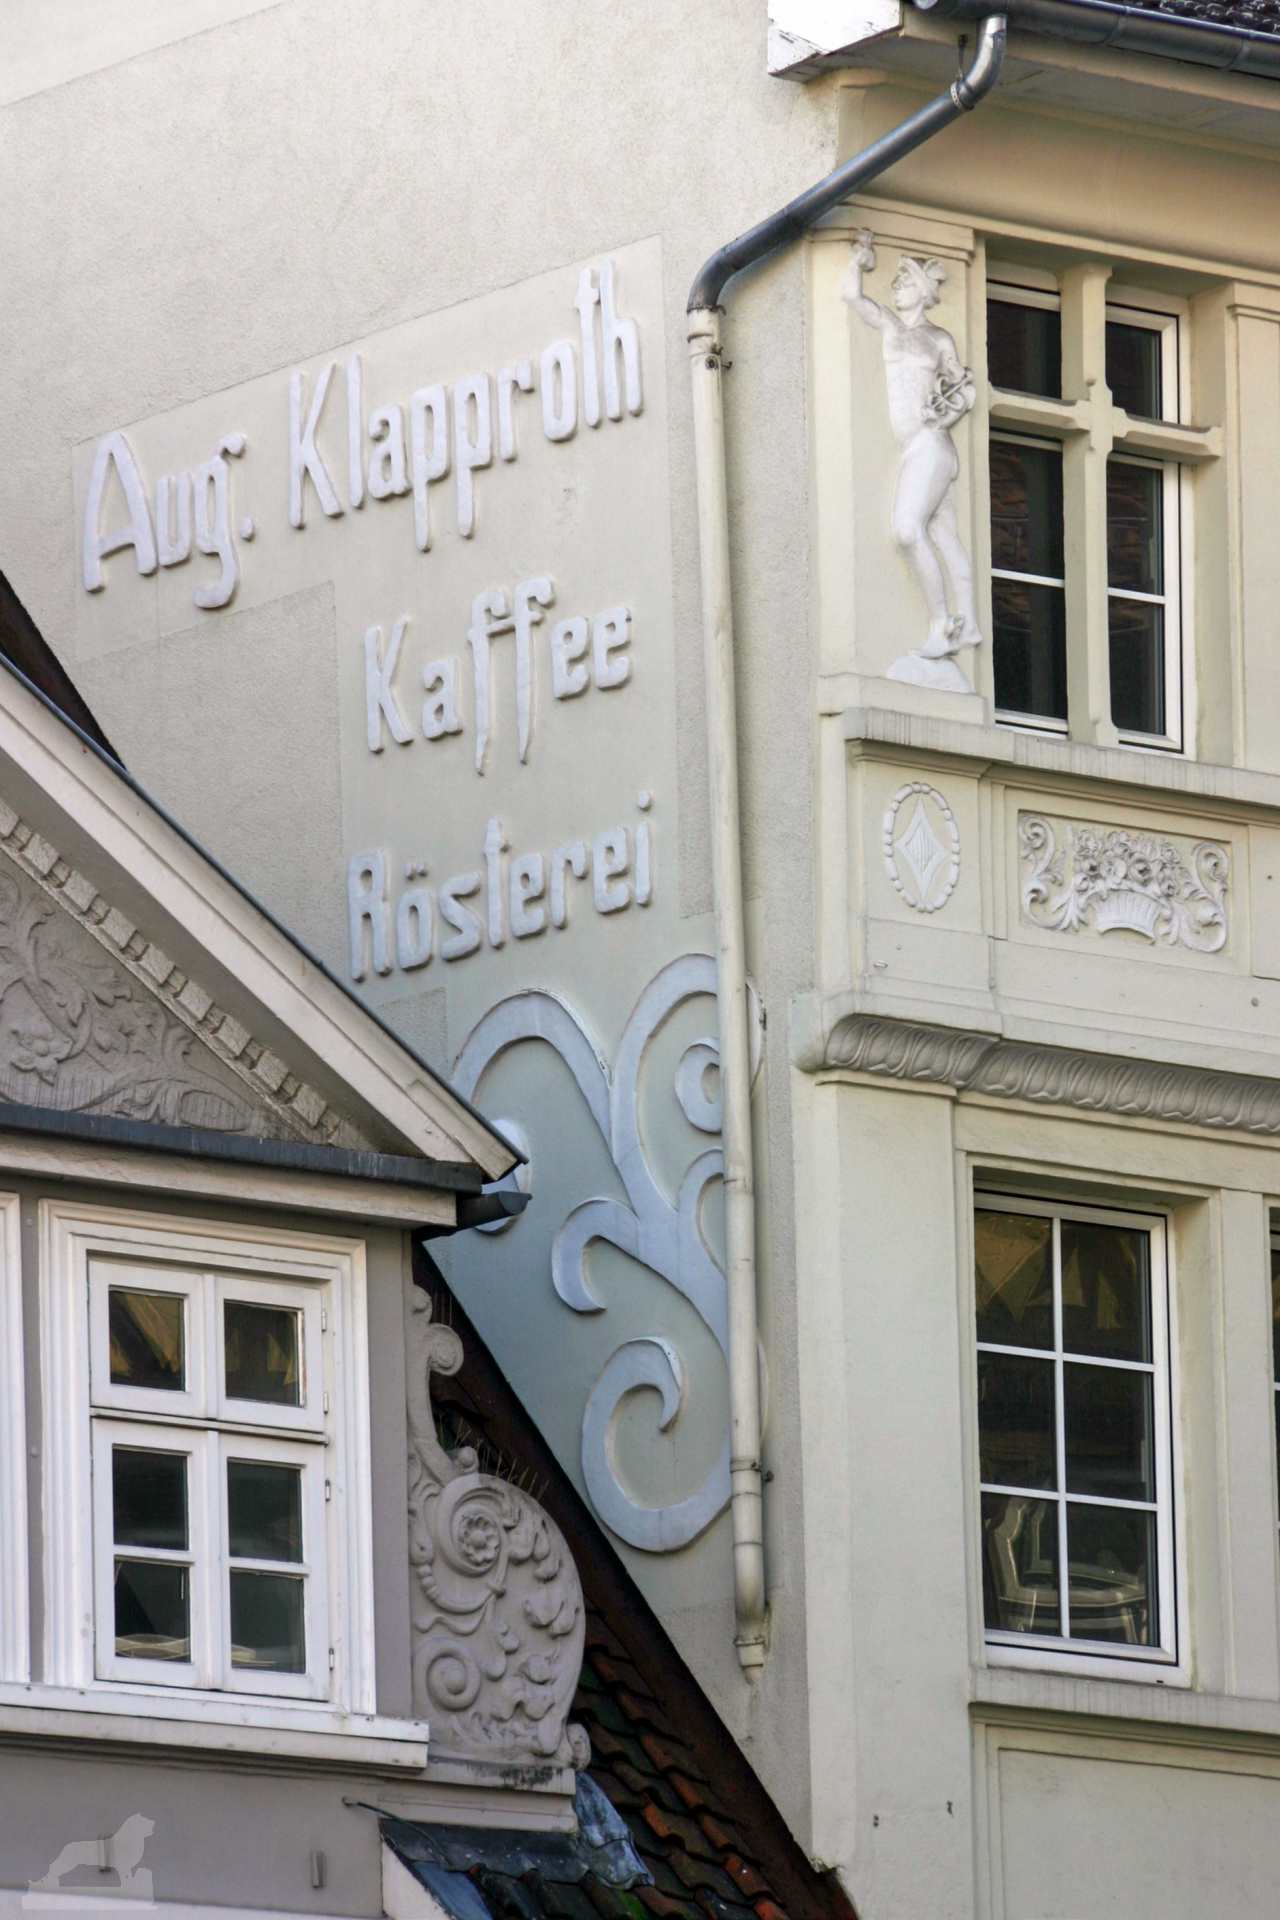 ehemalige Kaffeerösterei August Klapproth in der Schuhstraße